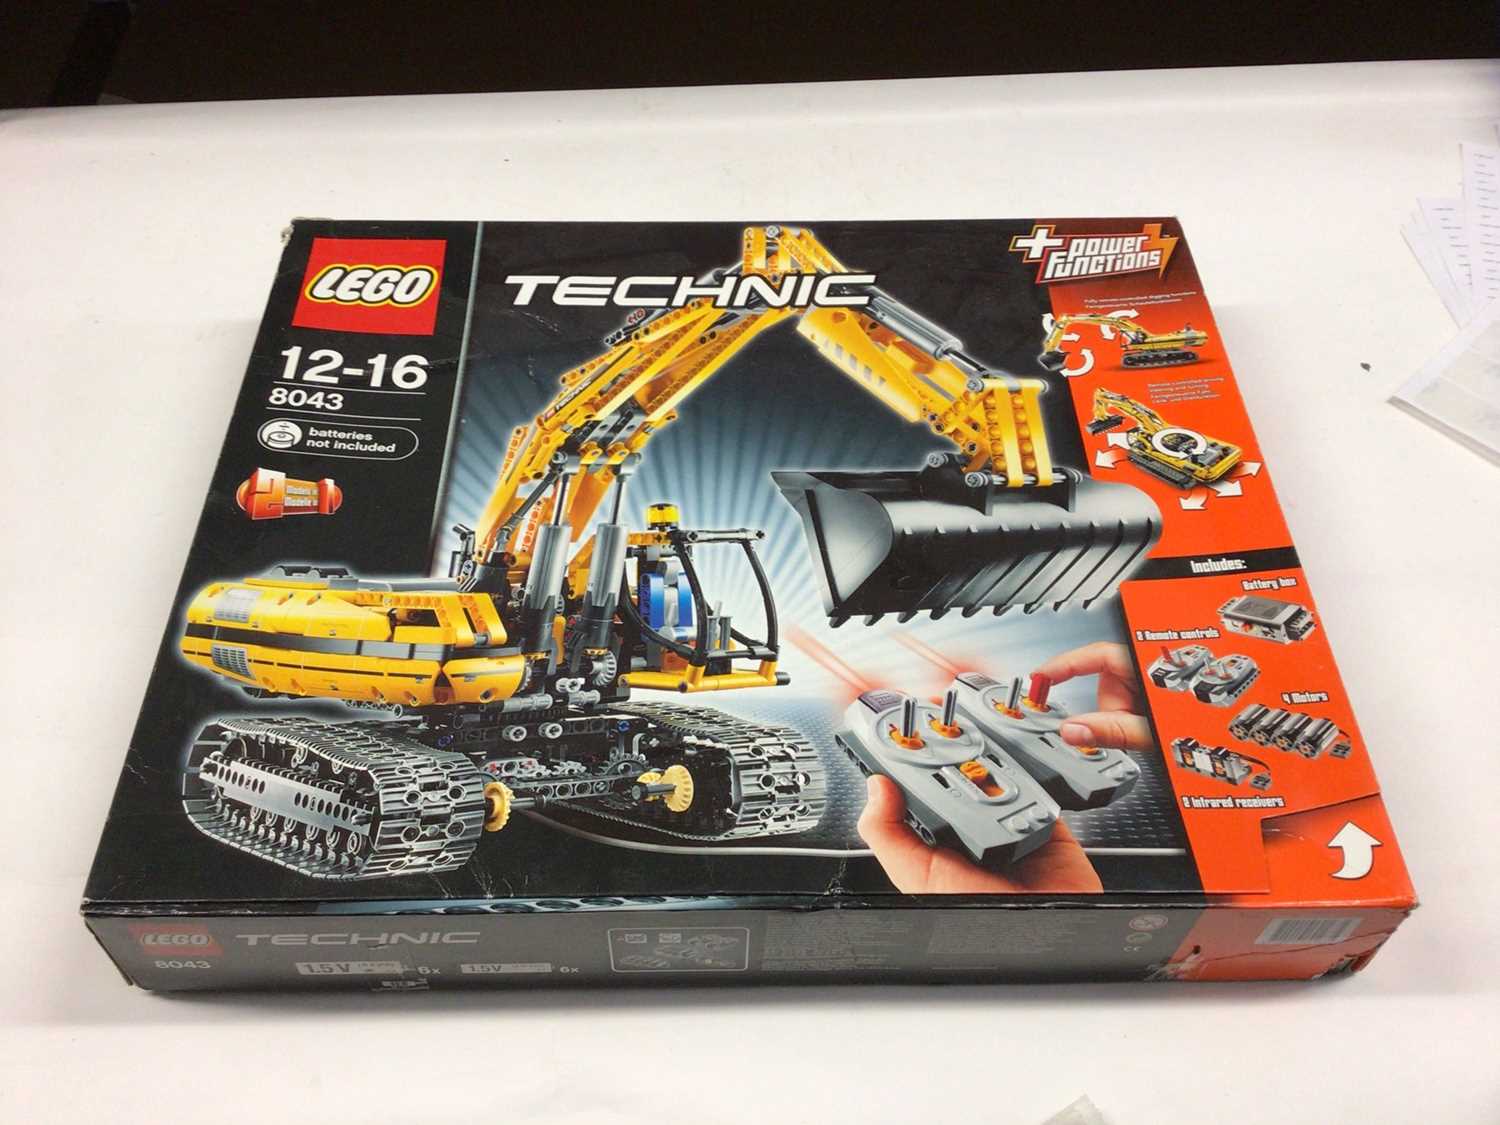 Lot 48 - Lego Technic 8042 Motorised Crawler with instructions, Boxed